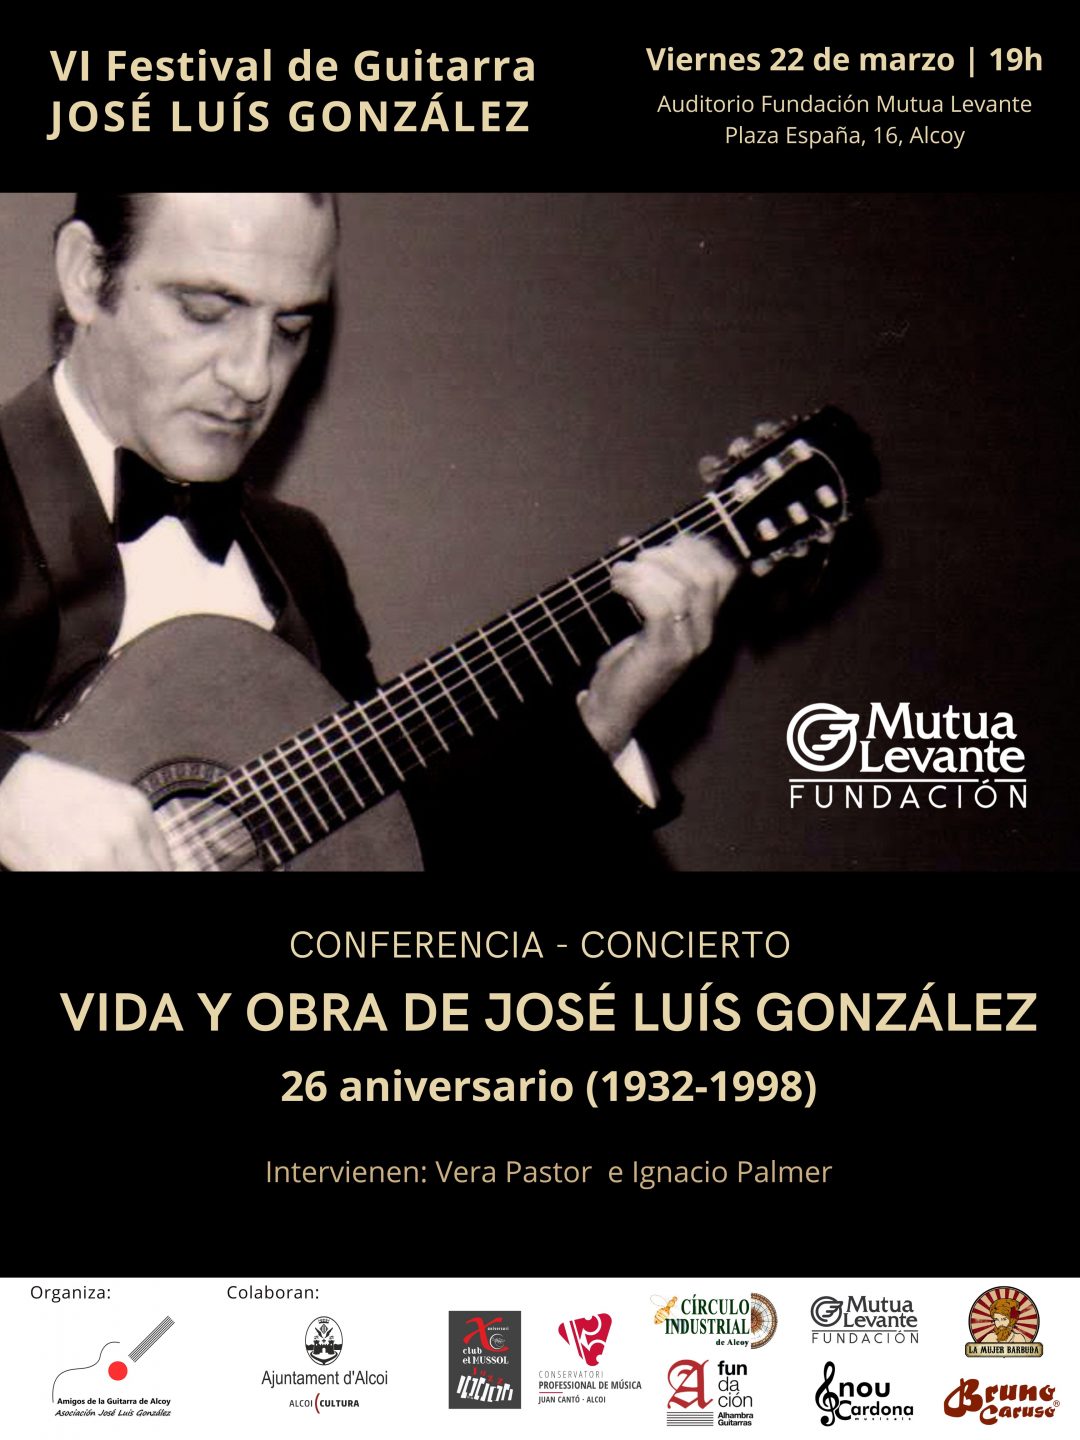 Conferencia-concierto sobre la vida y obra de José Luis González. 26 aniversario